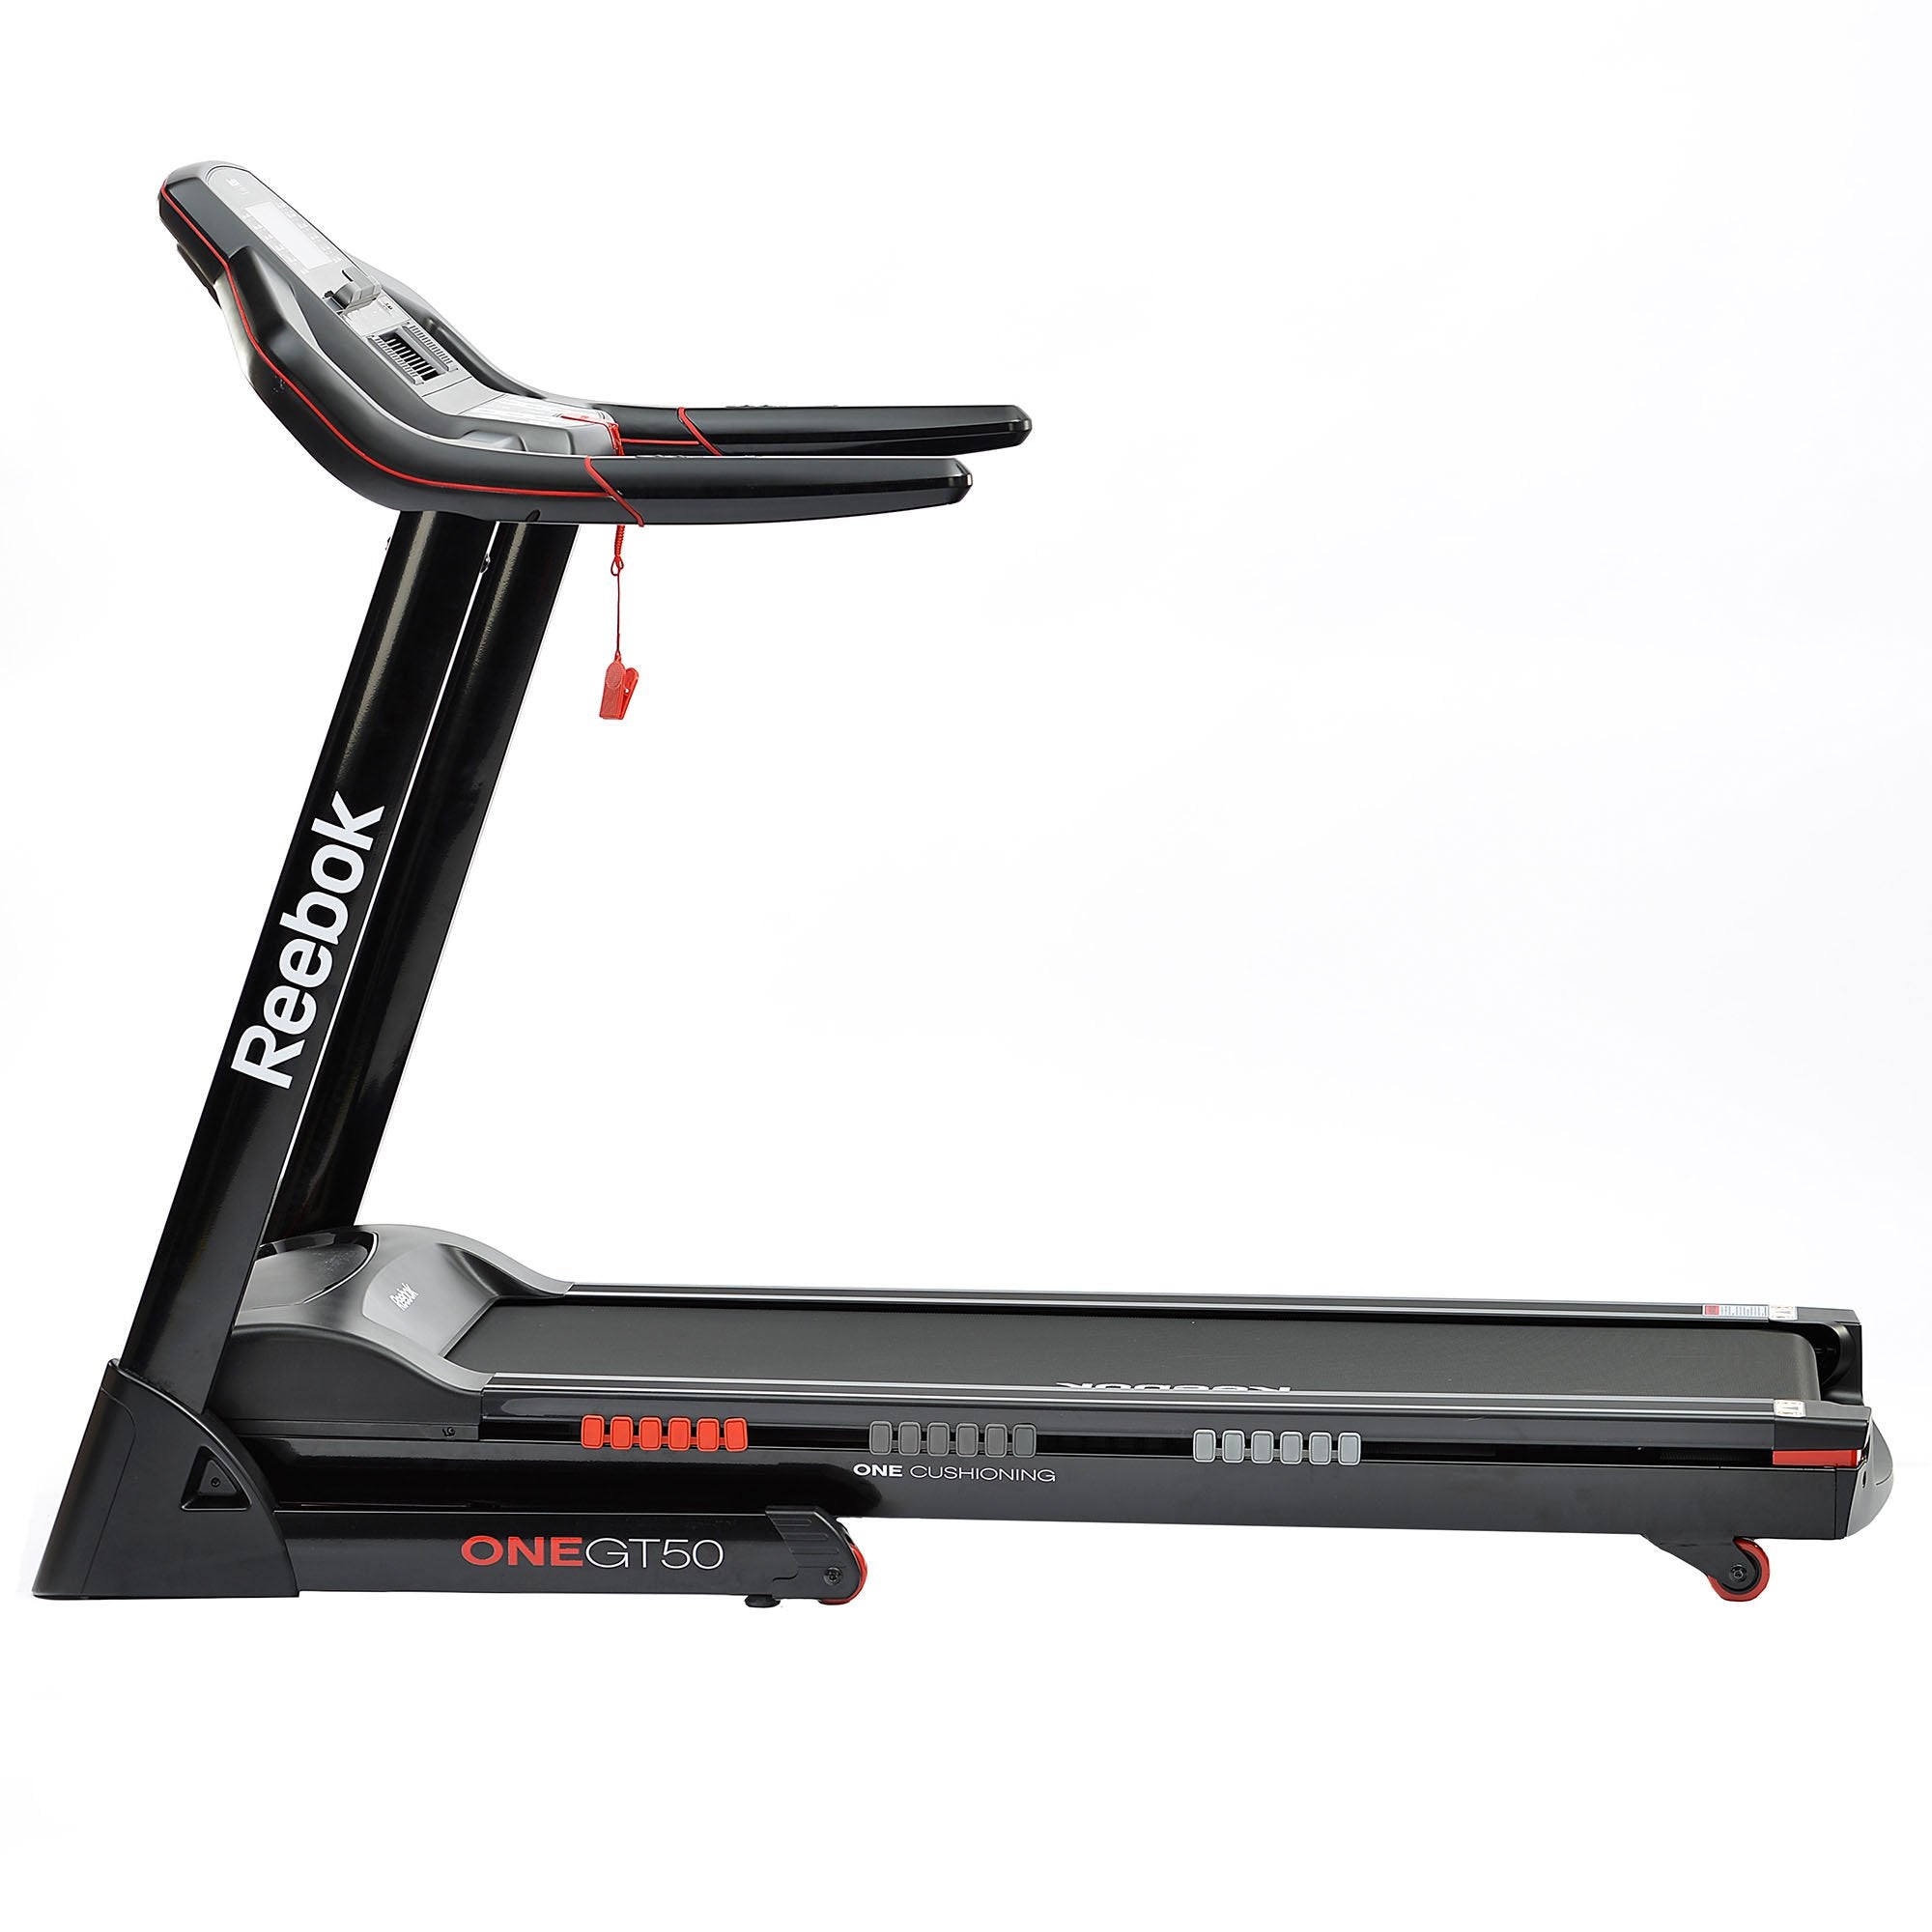 Hen imod digital Regnskab Reebok One GT50 Treadmill – Sweatband